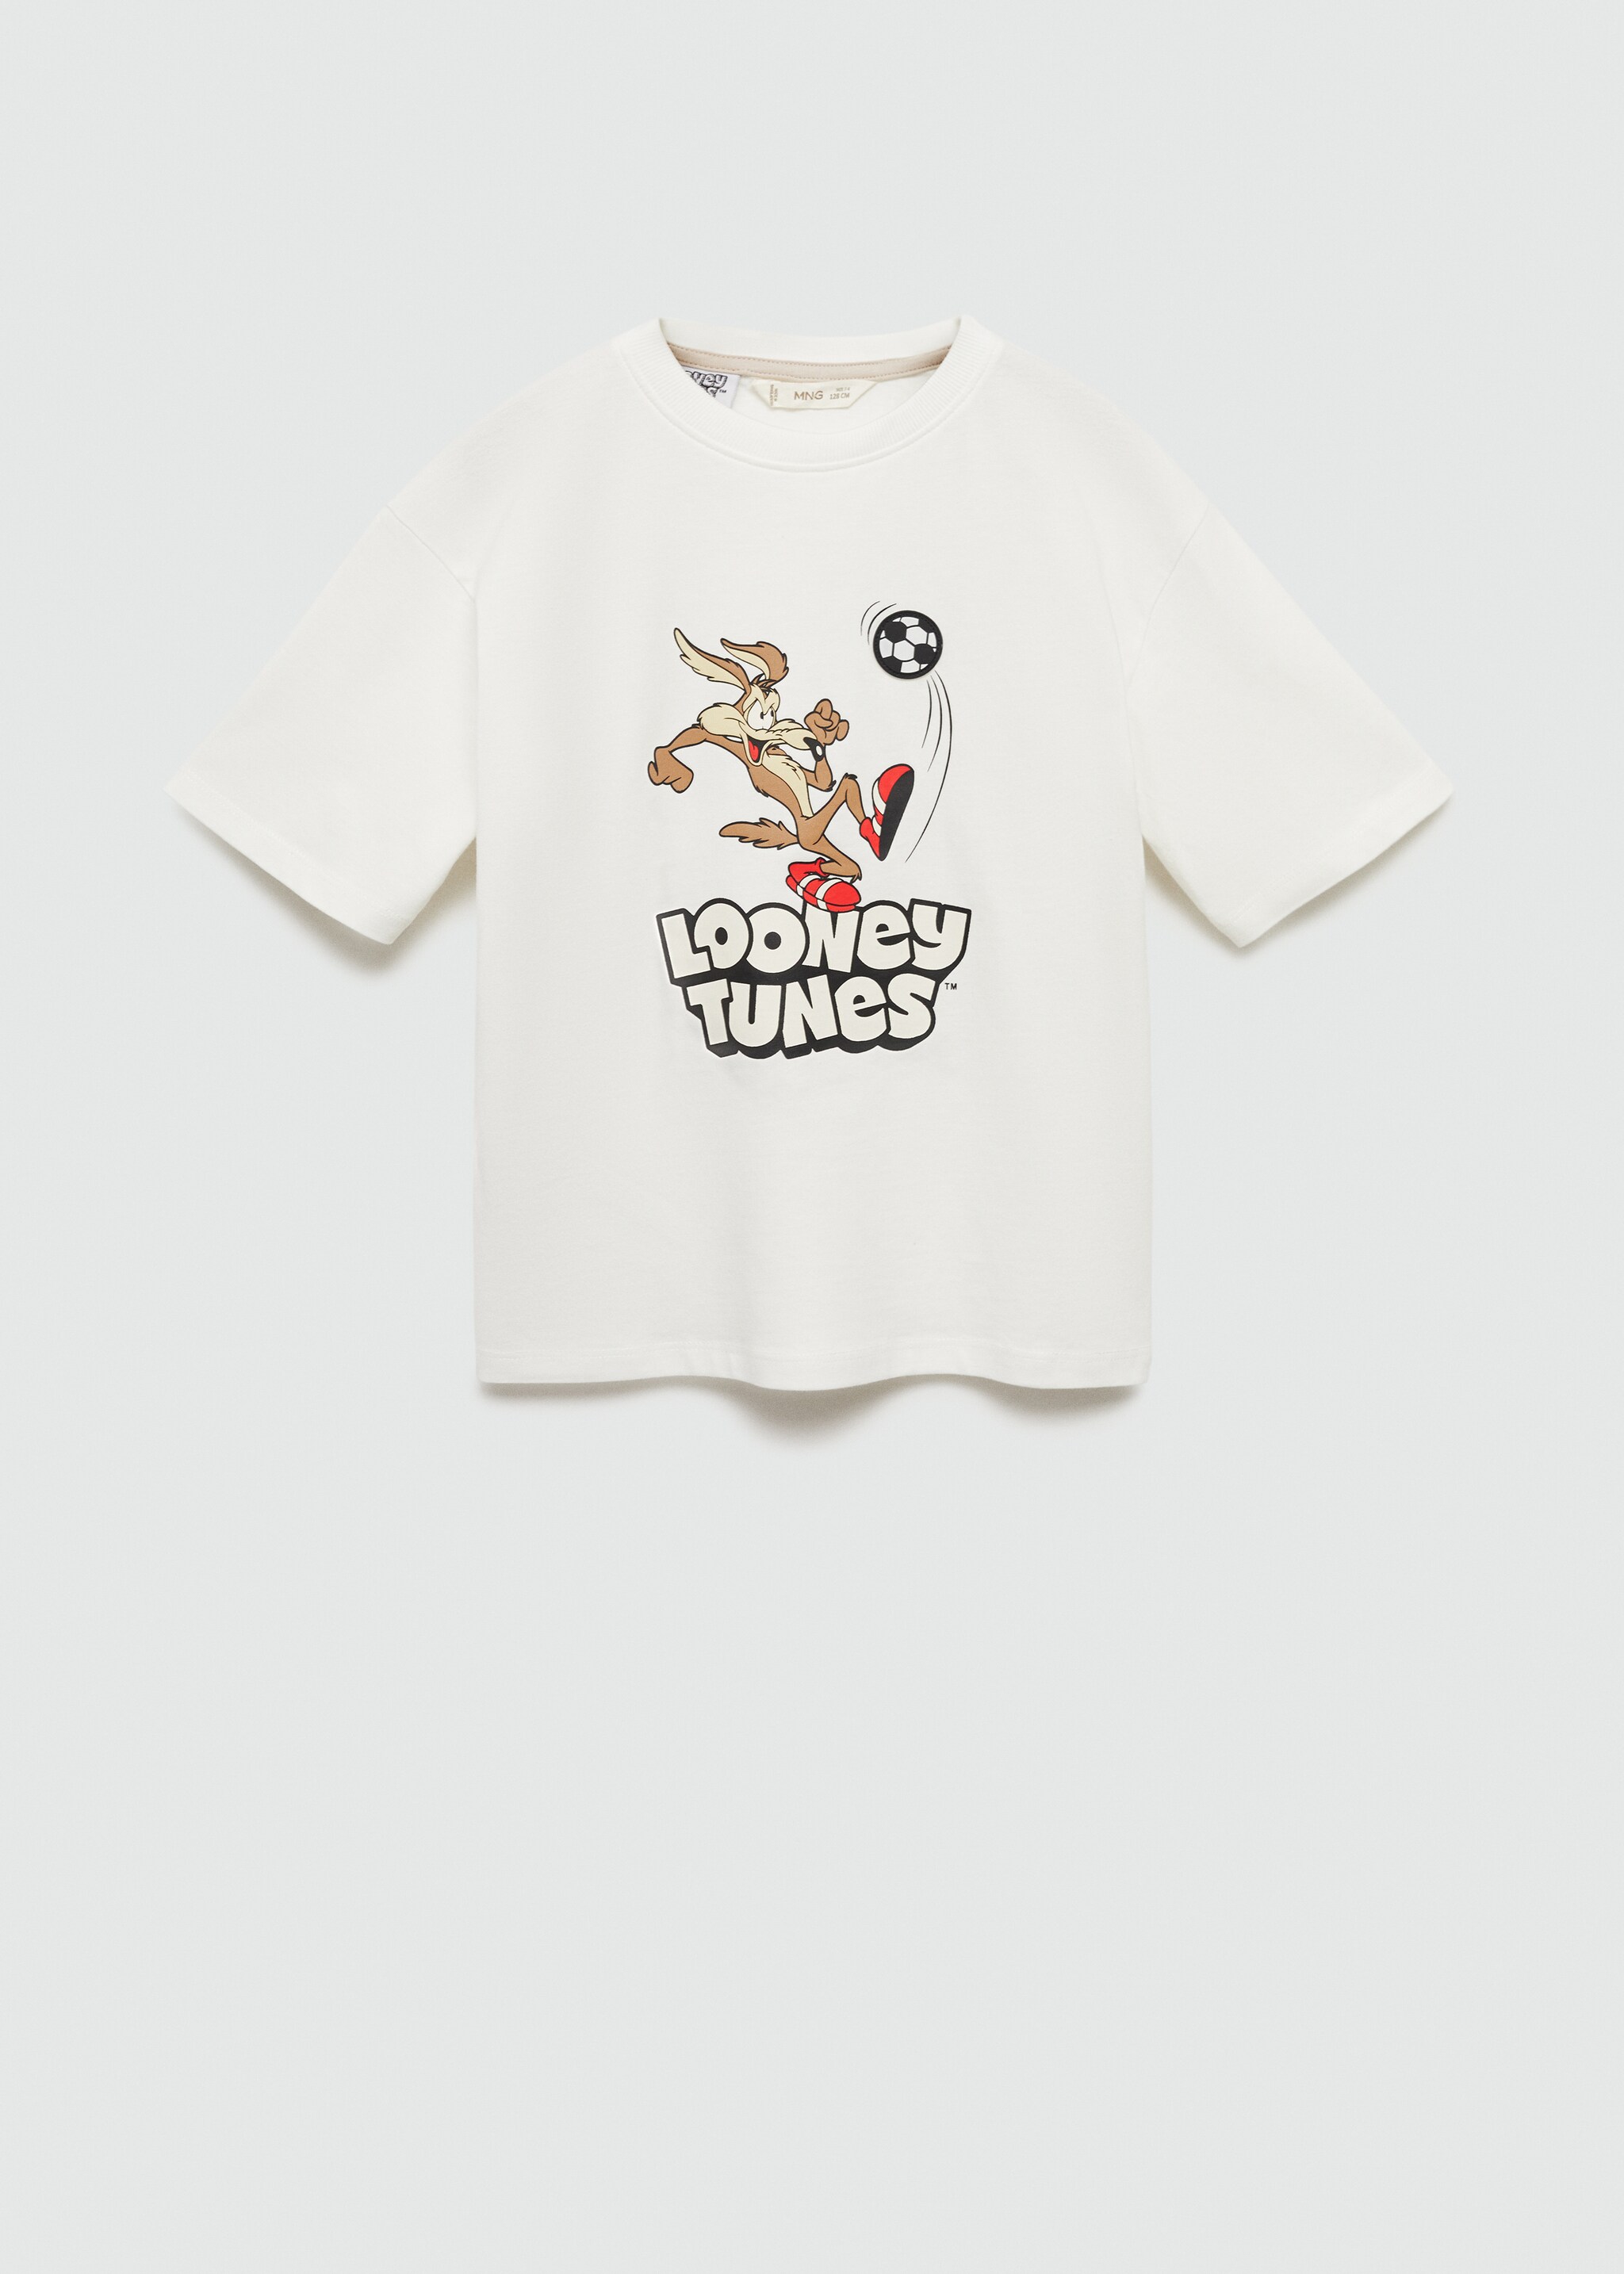 T-shirt da Looney Tunes - Artigo sem modelo